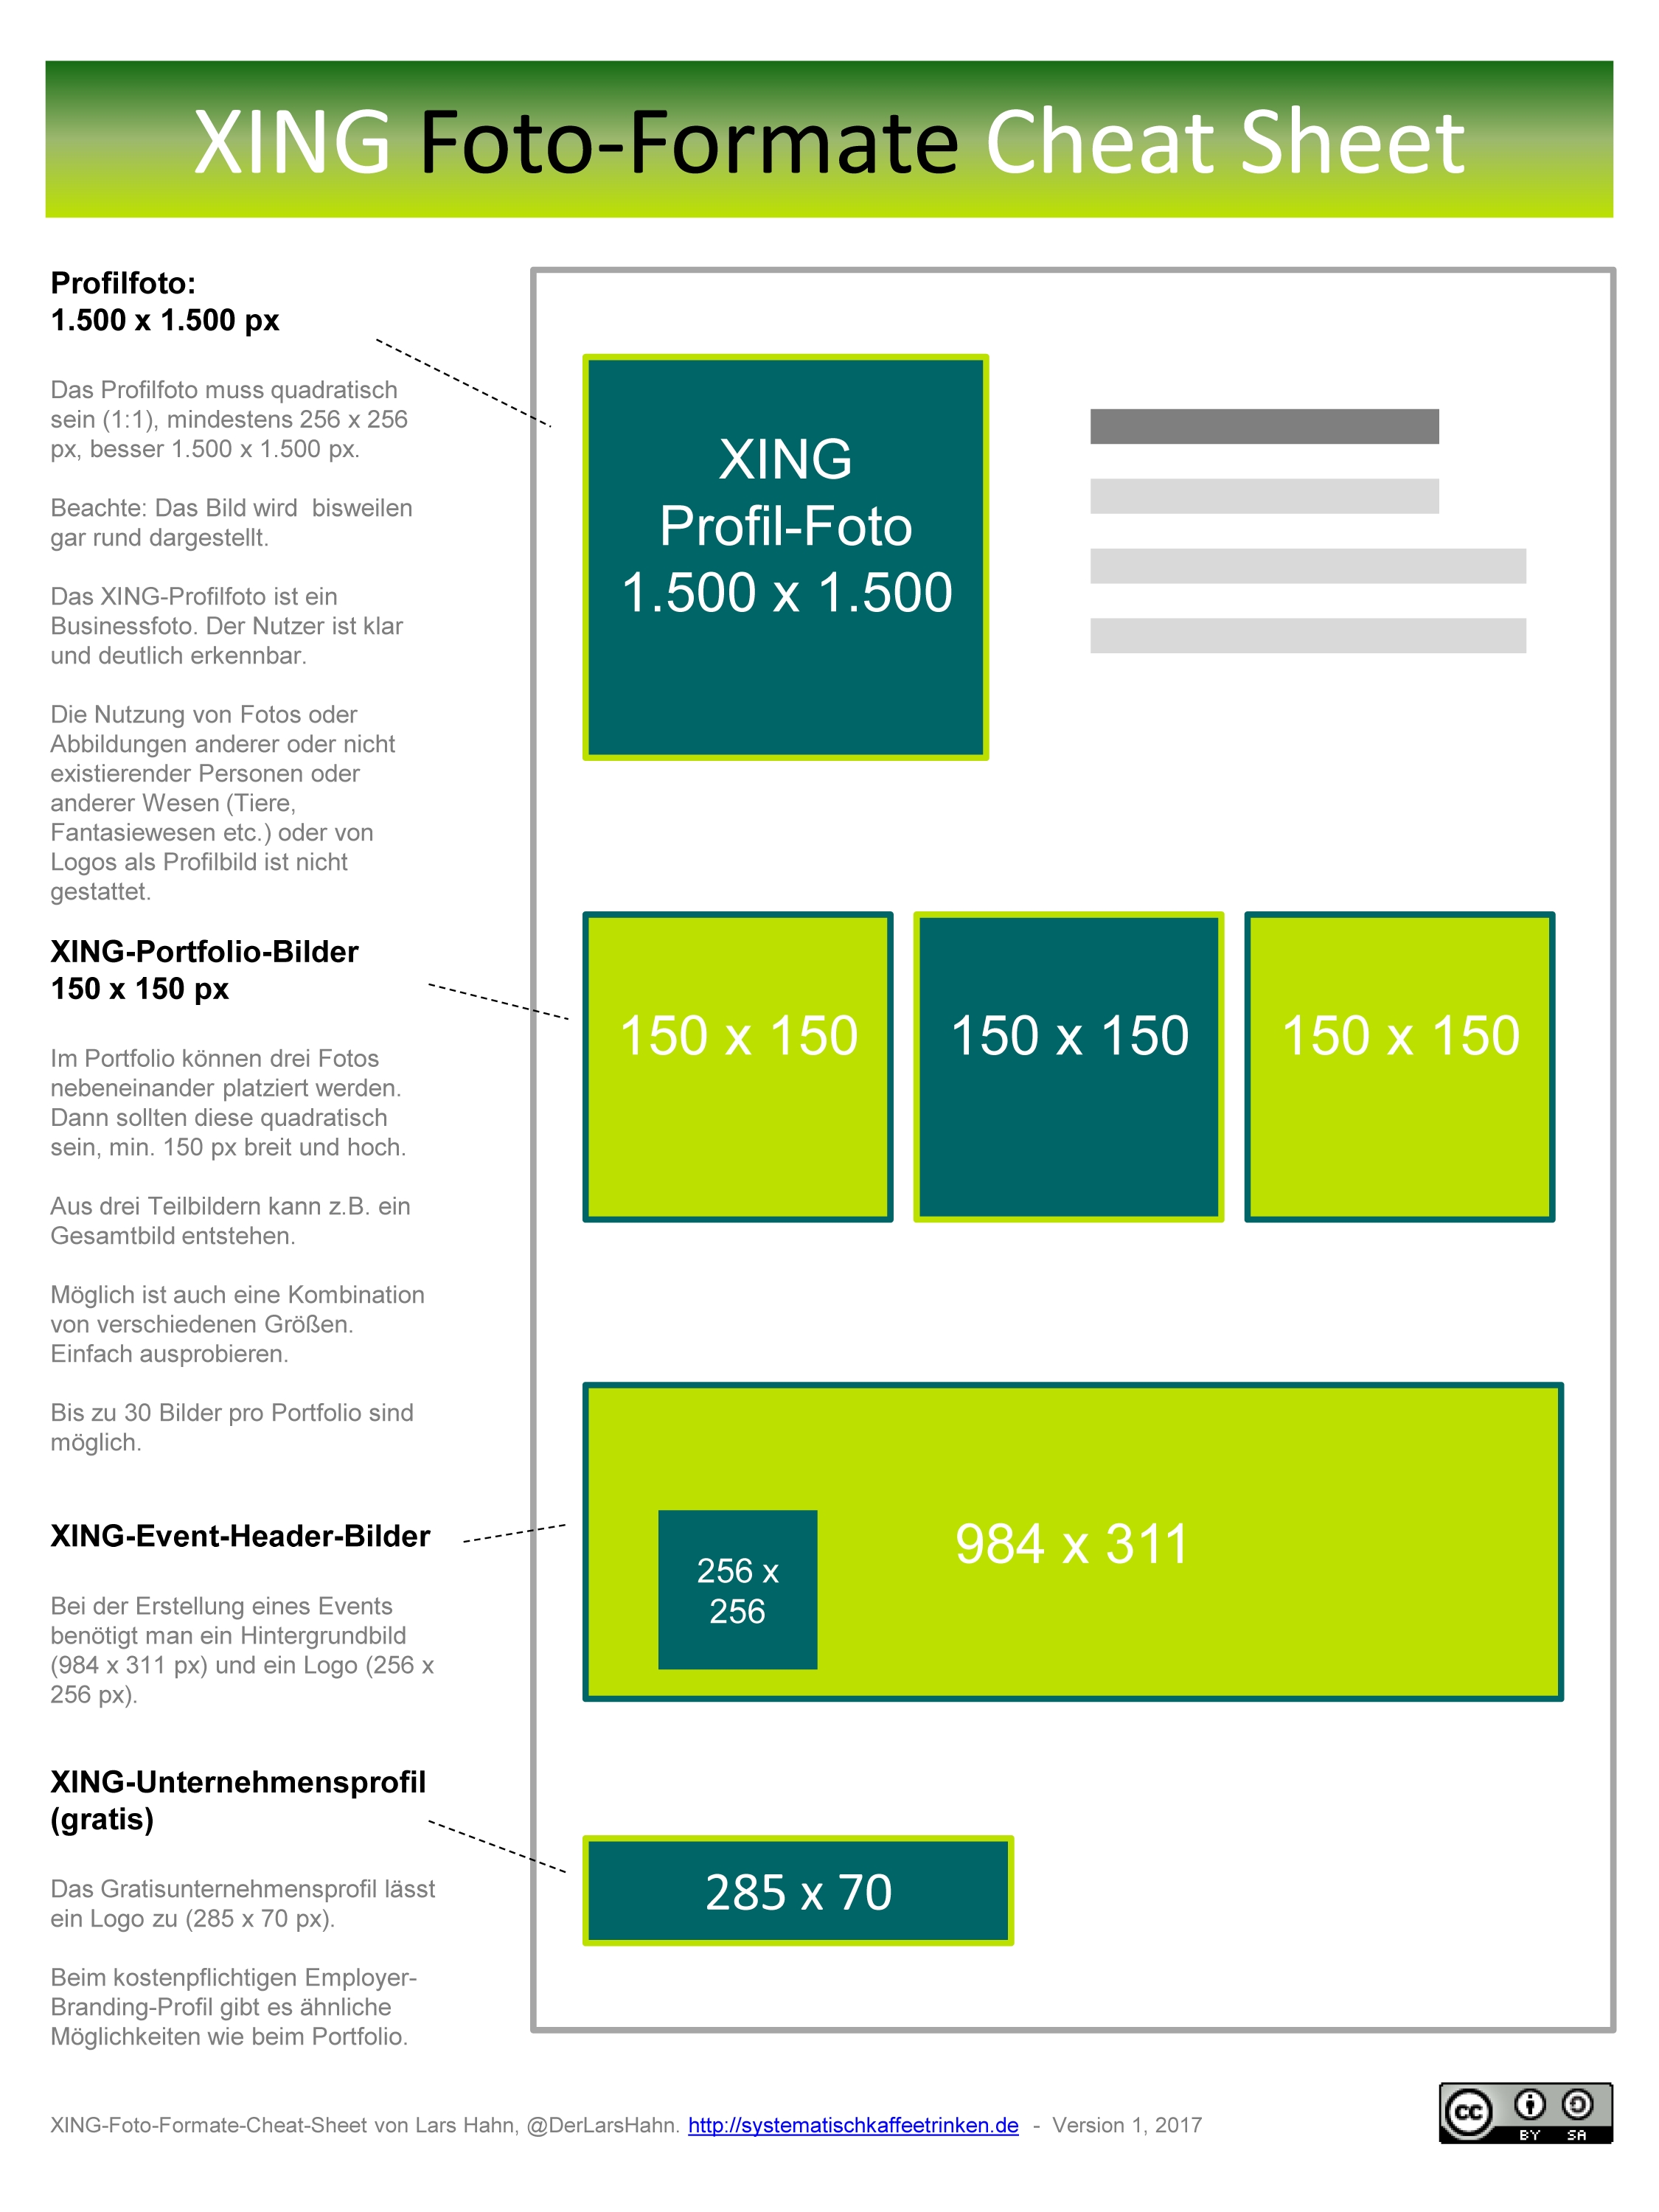 XING-Foto-Formate Infografik